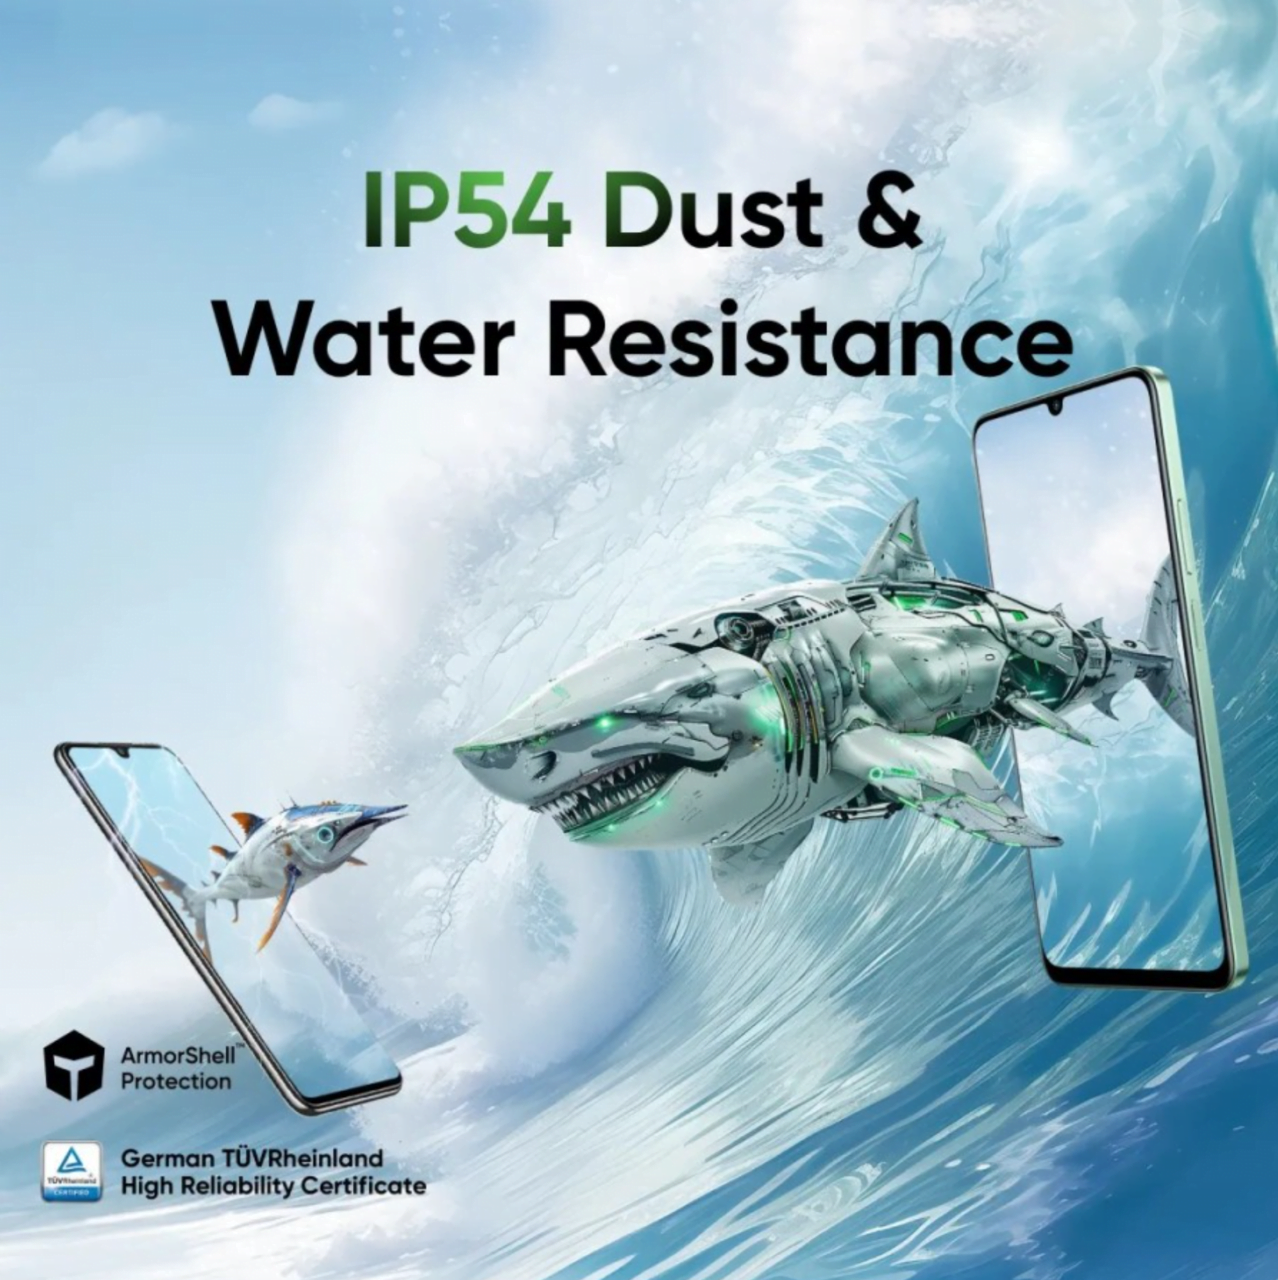 Reklama telefonu z mechanizmem rekinów i rybami, z napisem „IP54 Dust & Water Resistance” oraz „ArmorShell Protection” i „German TÜVRheinland High Reliability Certificate”.